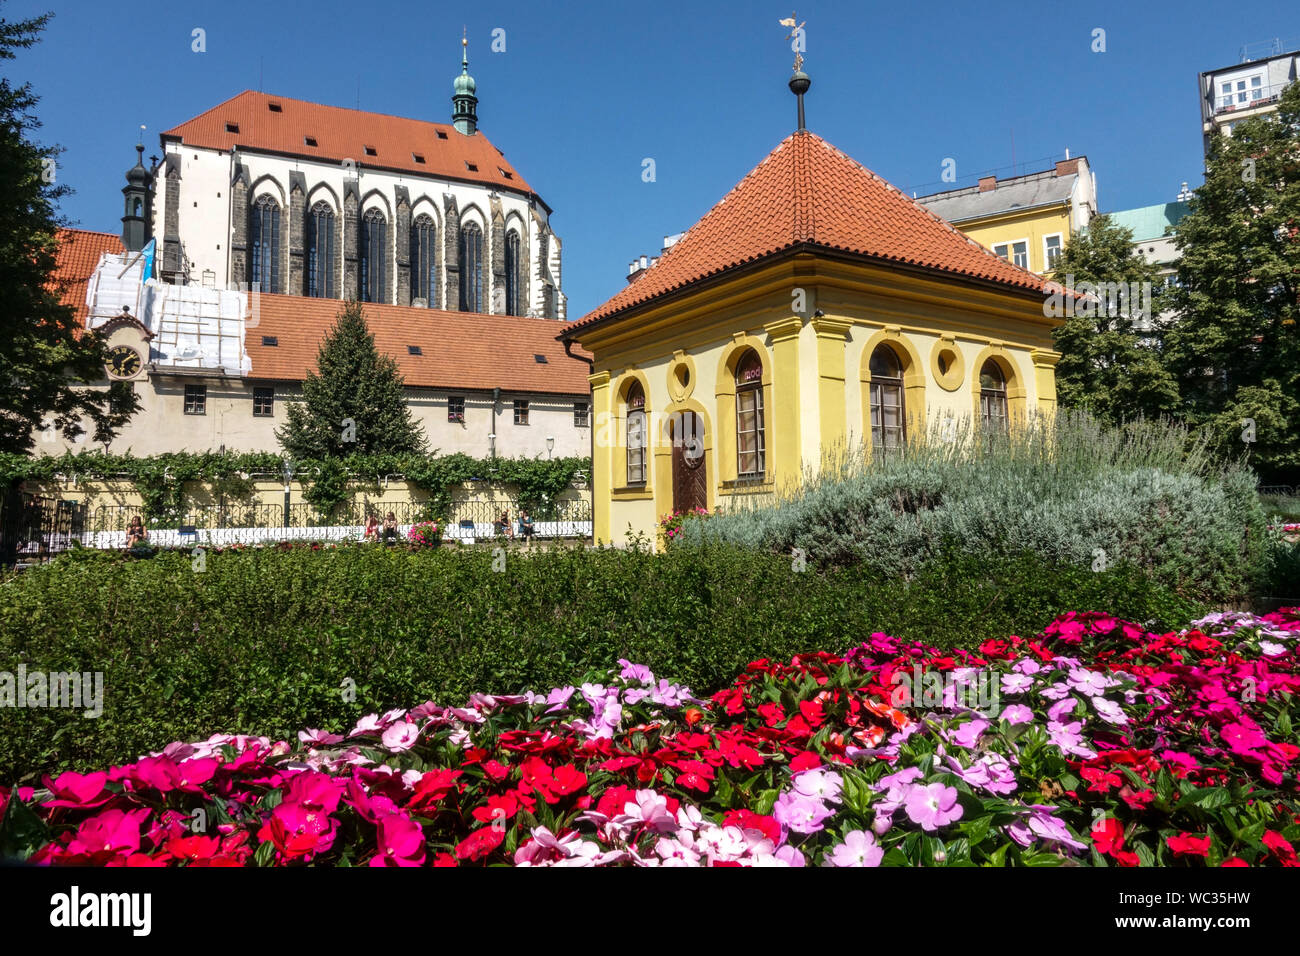 Jardins urbains Jardins franciscains de Prague, Frantiskanska zahrada, jardin dans le centre ville de Prague République tchèque Banque D'Images